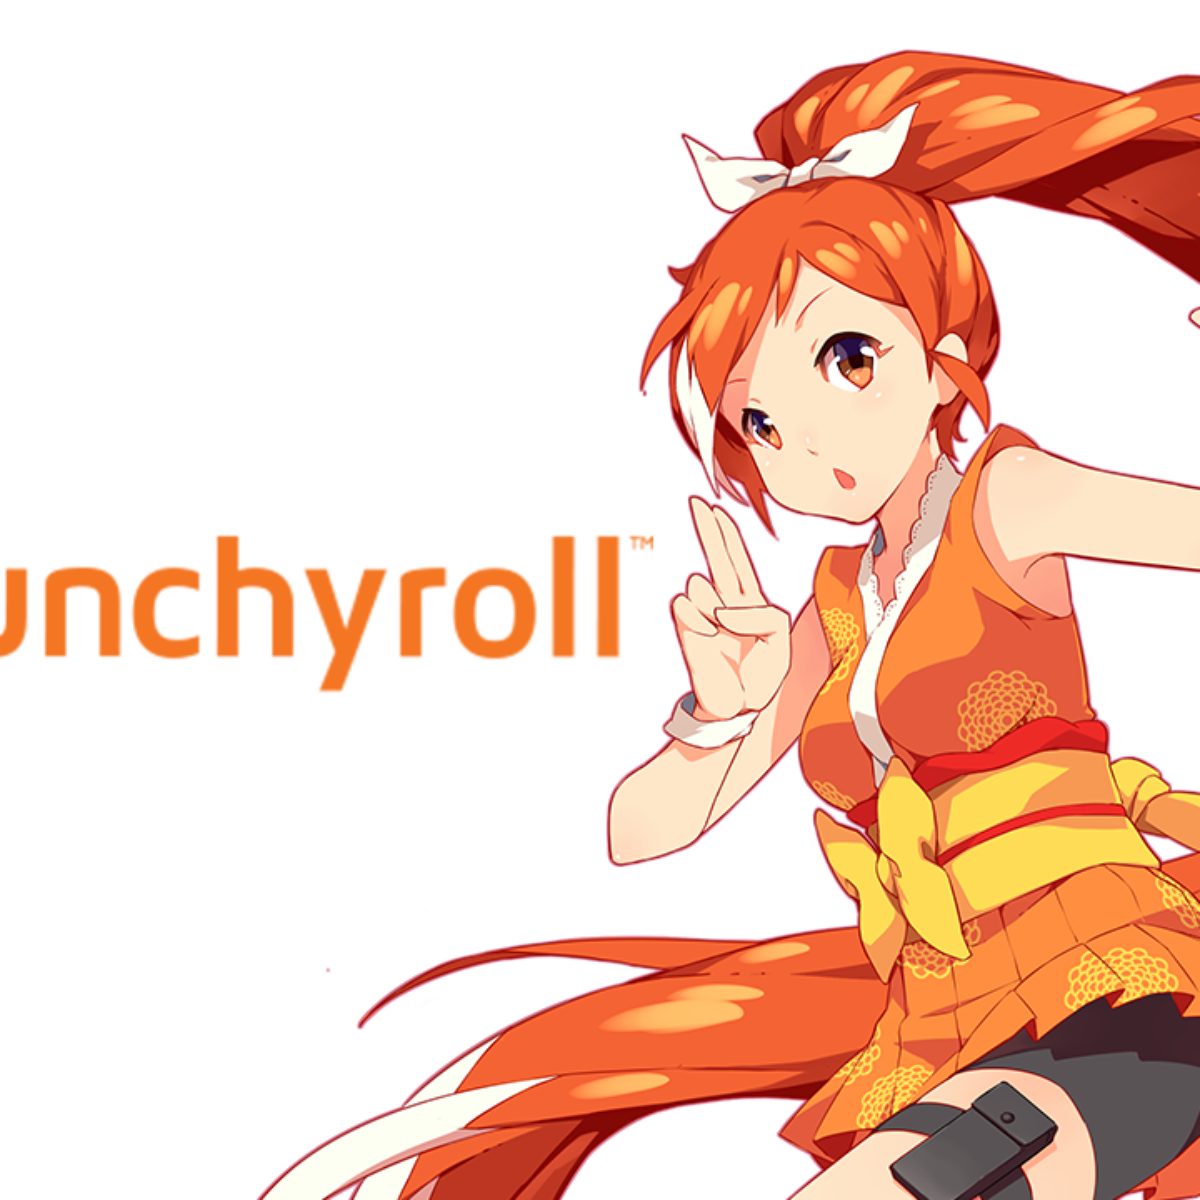 Vale a pena assinar o Crunchyroll?